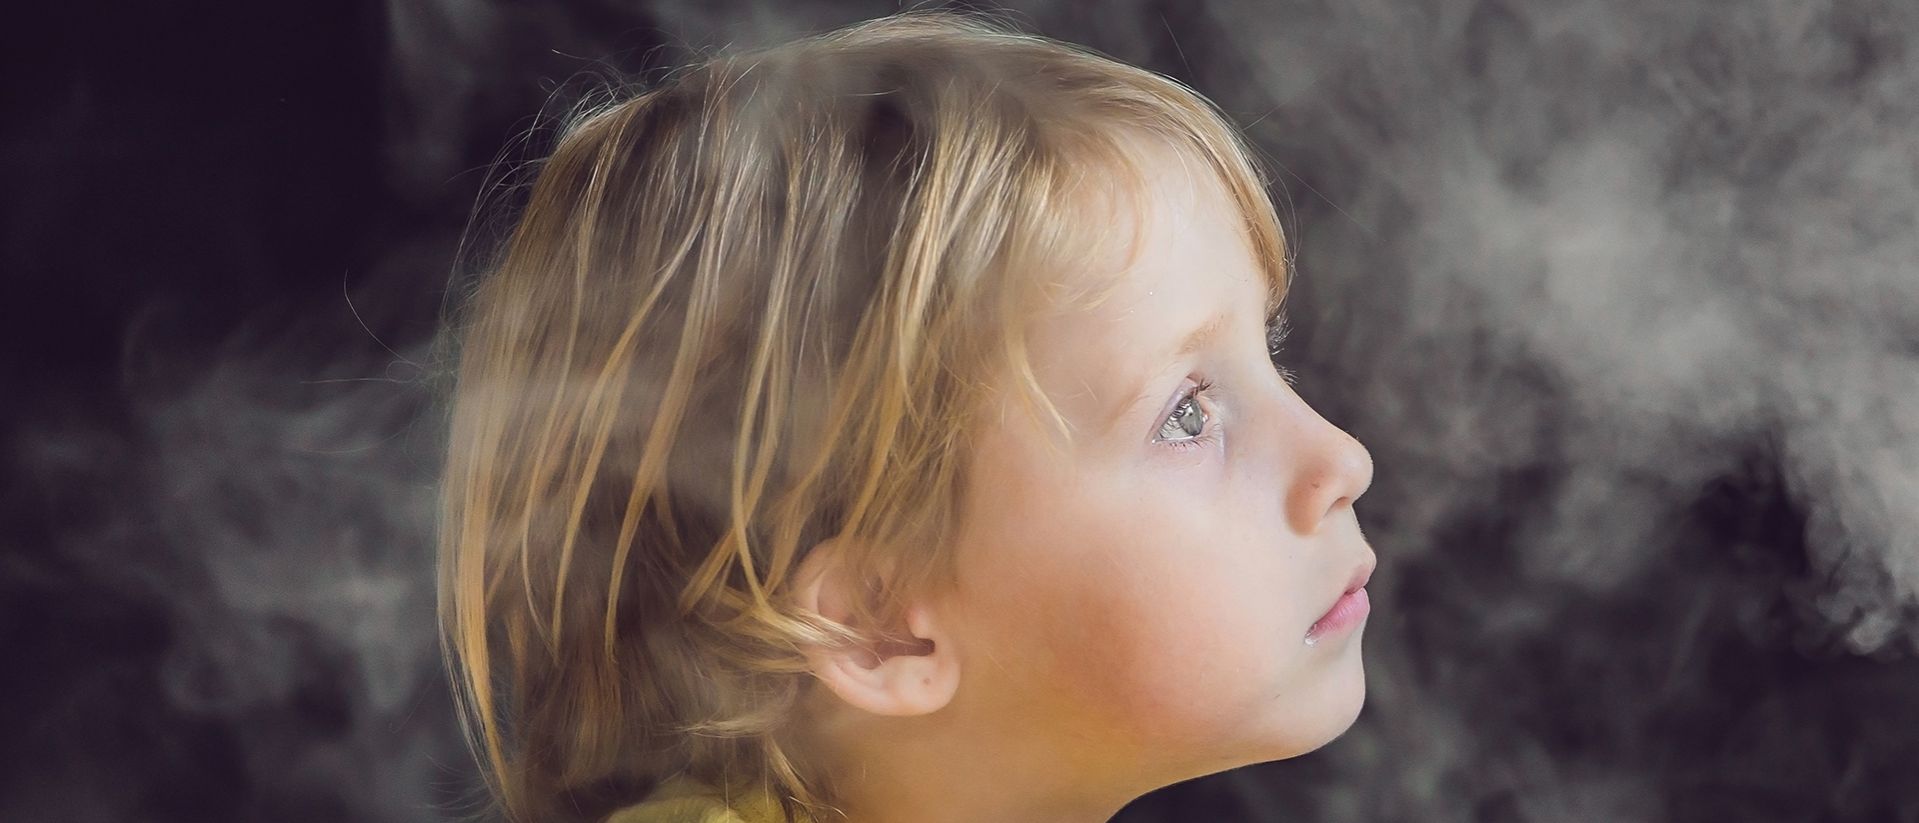 L’inquinamento atmosferico riduce la capacità polmonare nei bambini